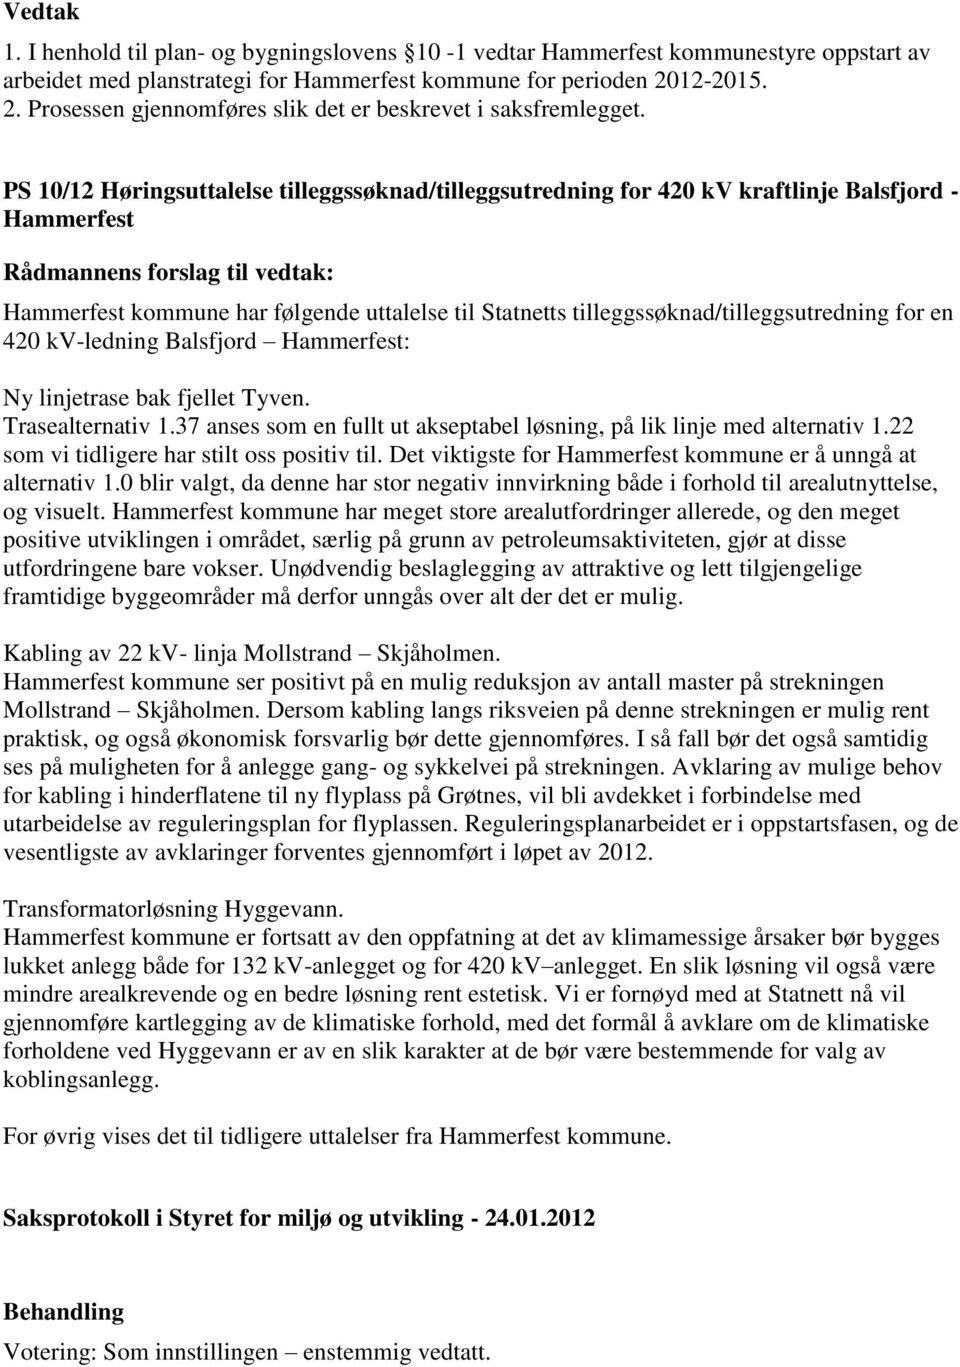 PS 10/12 Høringsuttalelse tilleggssøknad/tilleggsutredning for 420 kv kraftlinje Balsfjord - Hammerfest Hammerfest kommune har følgende uttalelse til Statnetts tilleggssøknad/tilleggsutredning for en